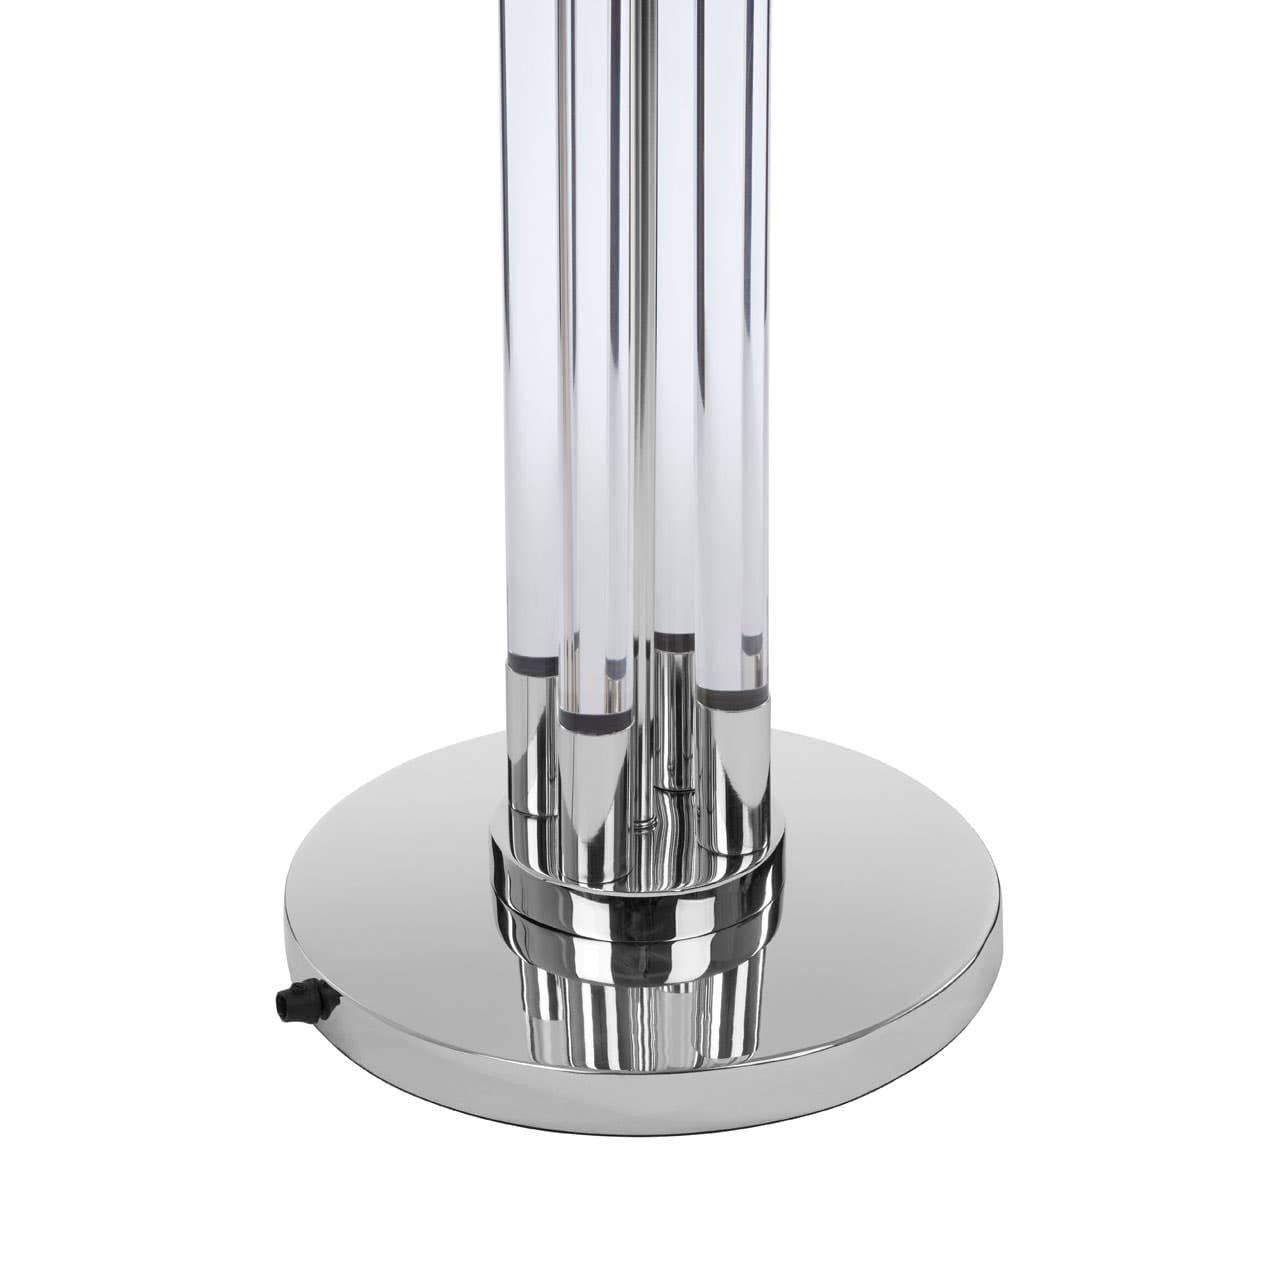 Noosa & Co. Lighting Skye Tall Acrylic / Tubular Base Floor Lamp House of Isabella UK